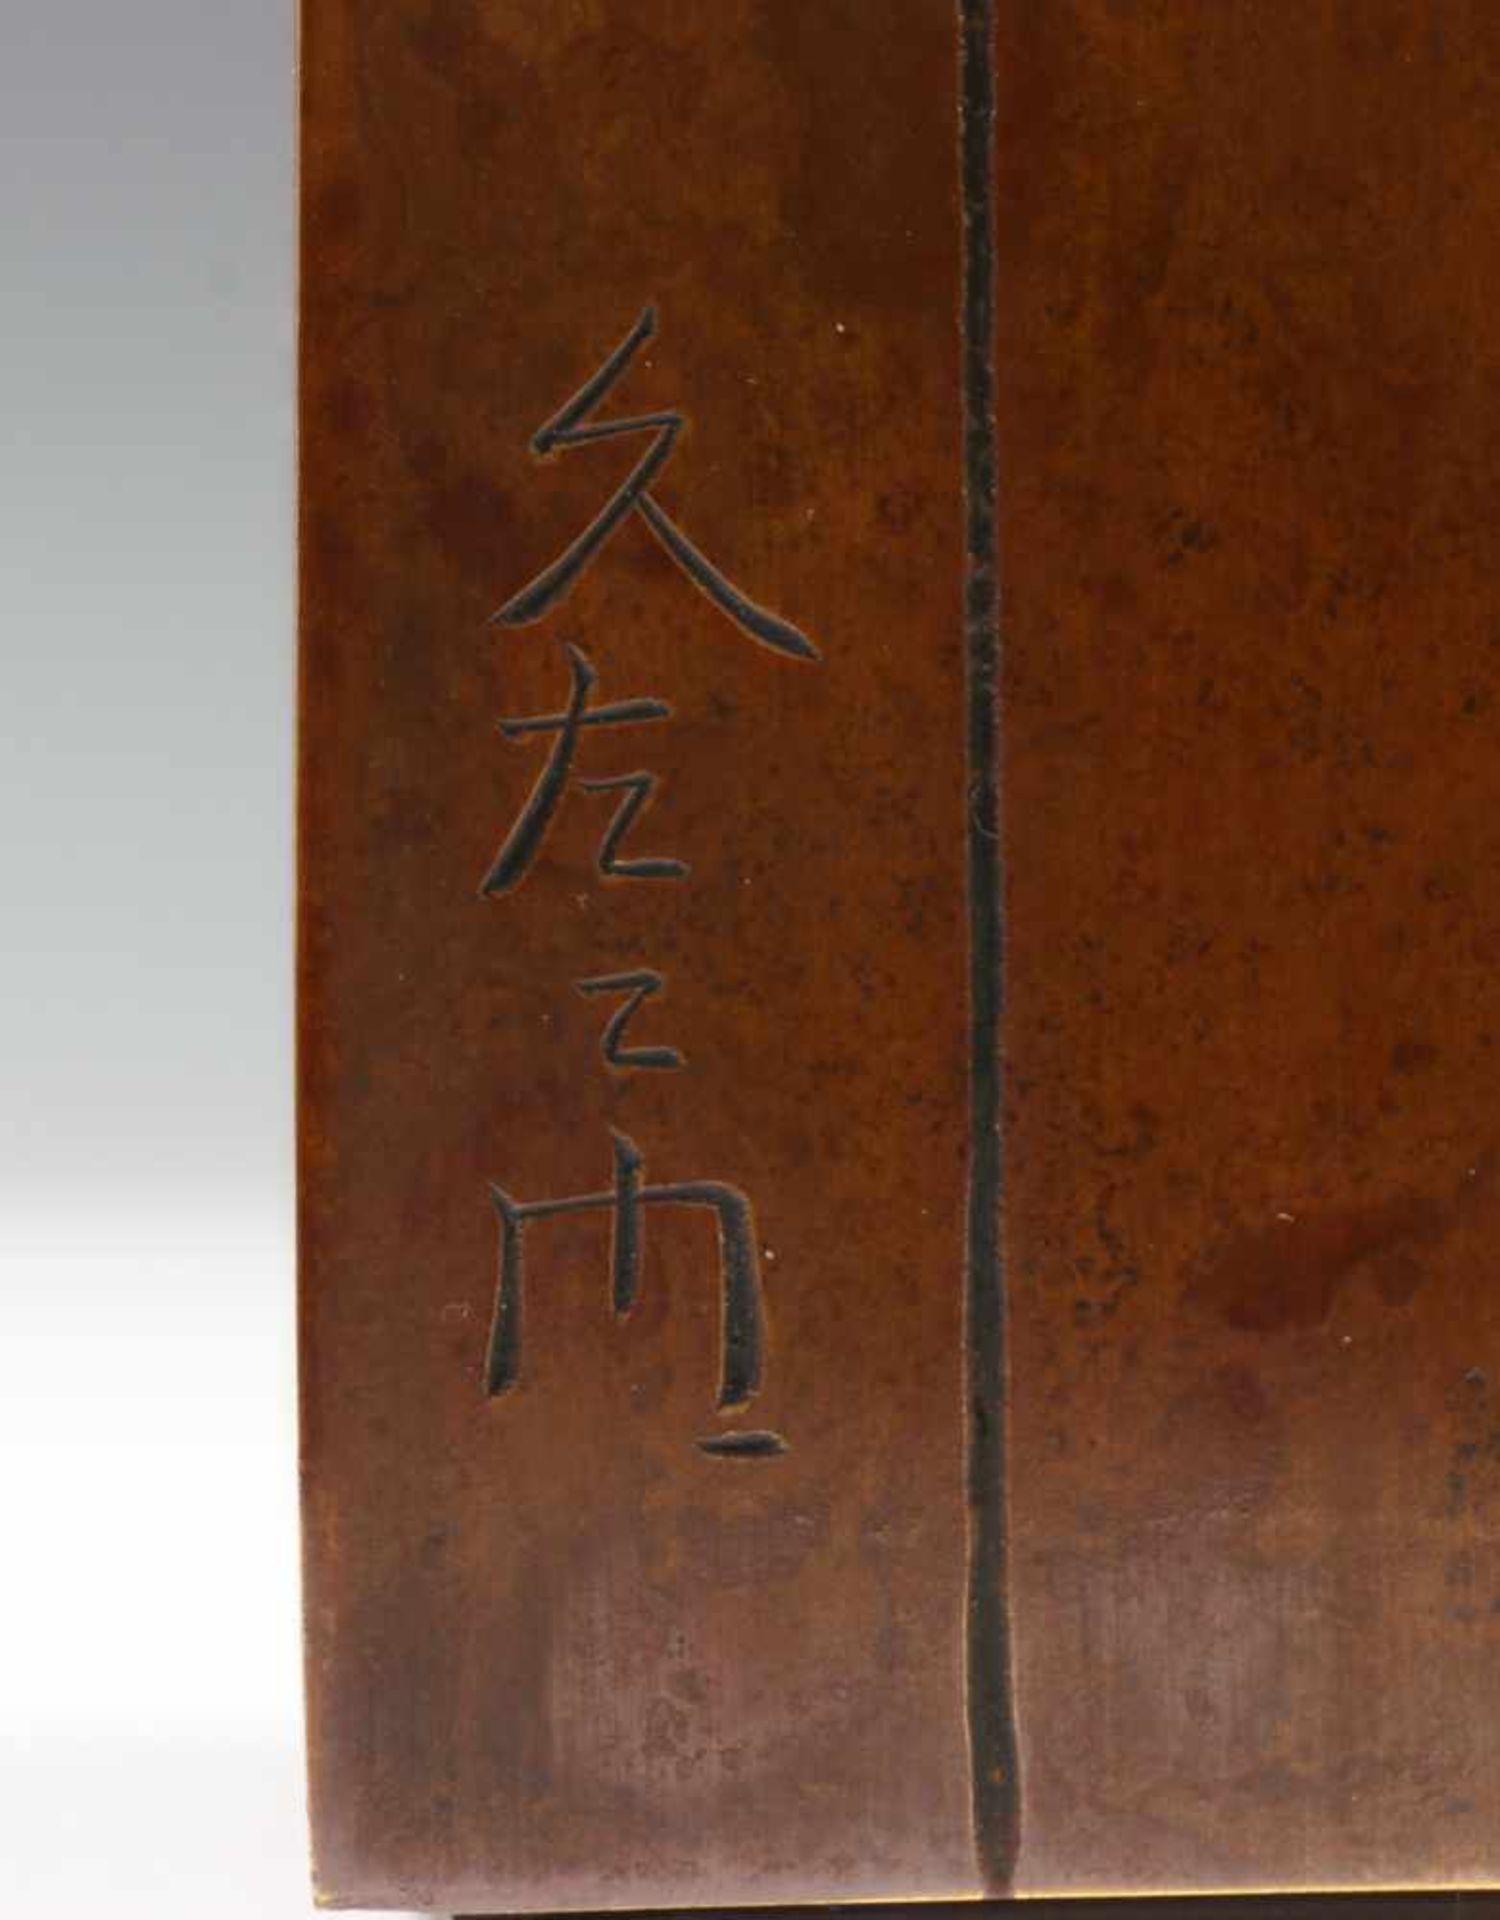 Japan, gepatineerd bronzen rechthoekige vaas, 20e eeuw,met organisch gevormde halsopening, - Bild 3 aus 4